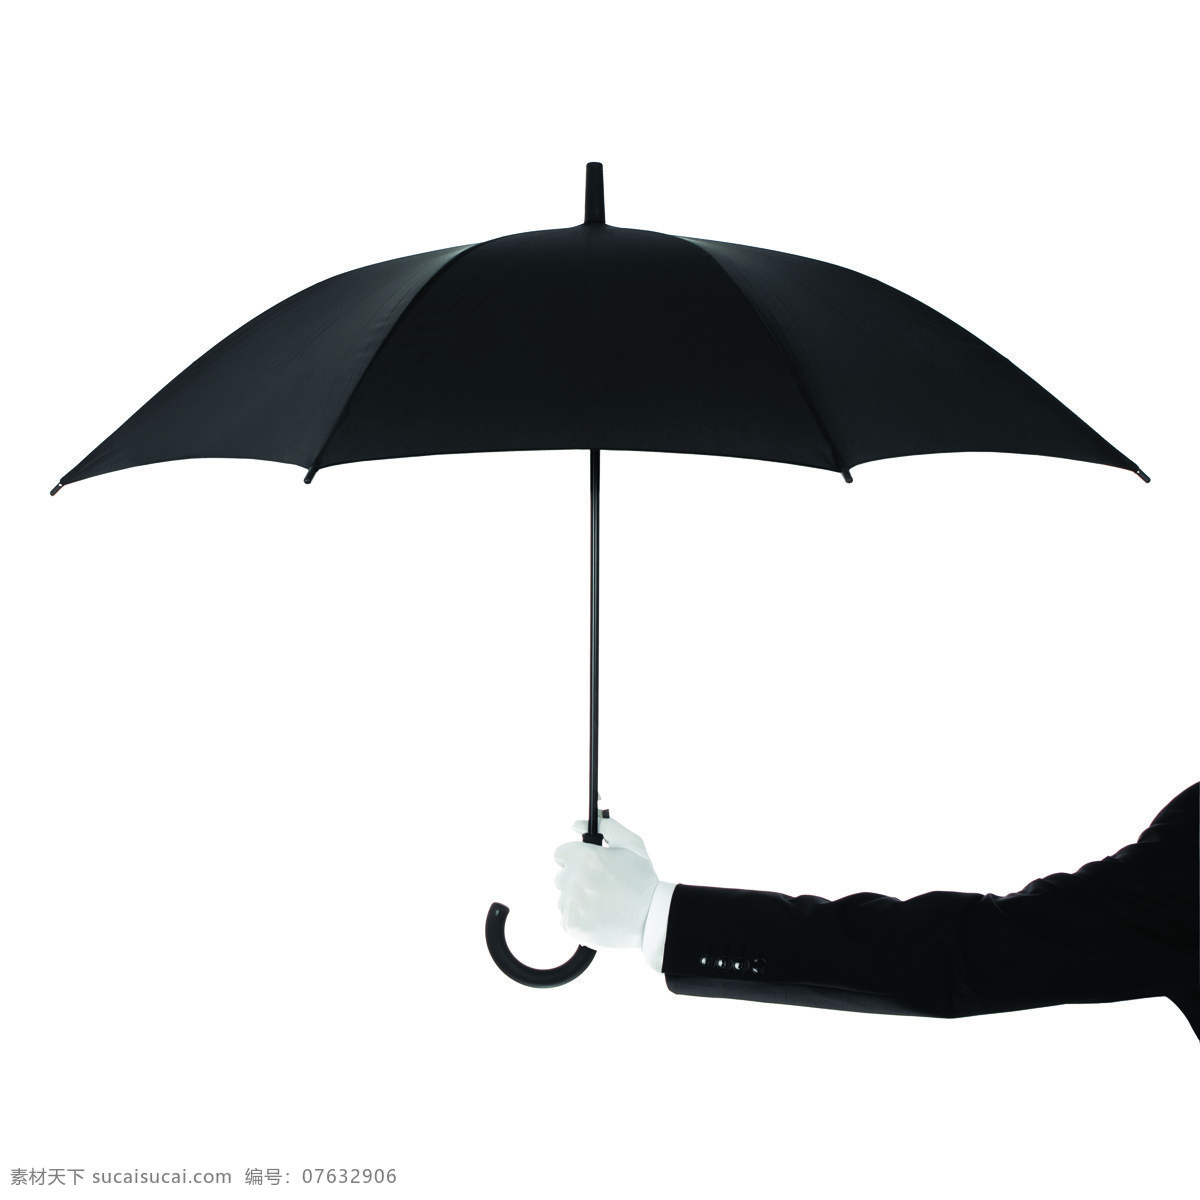 撑雨伞的手势 雨伞 打伞 撑伞 打雨伞 手势 其他类别 生活百科 白色